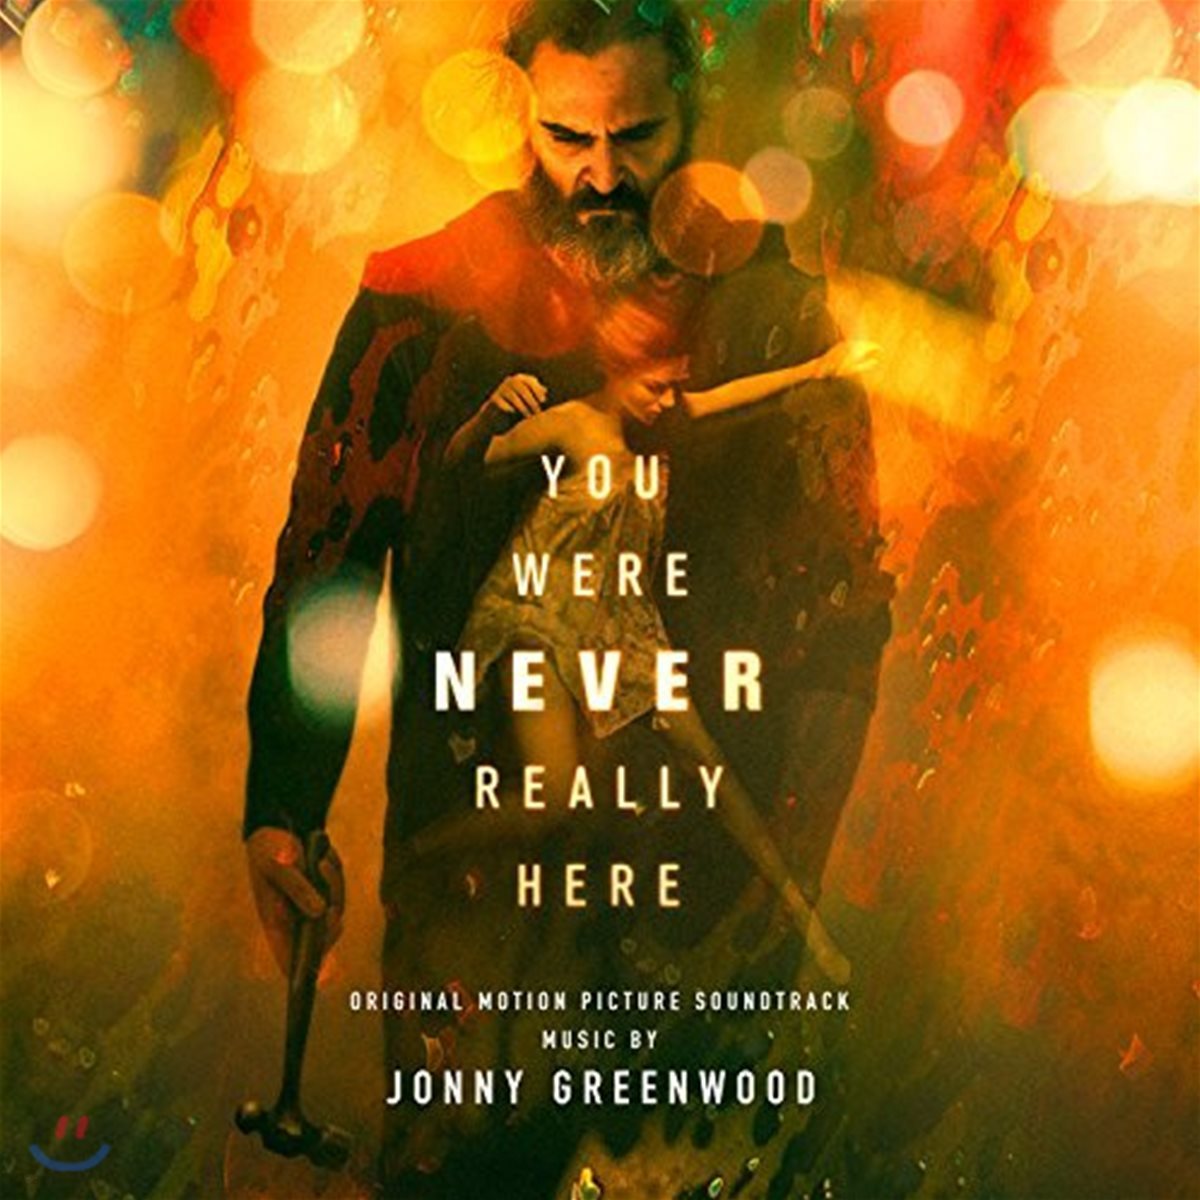 유 워 네버 리얼리 히어 영화음악 (You Were Never Really Here OST by Jonny Greenwood)